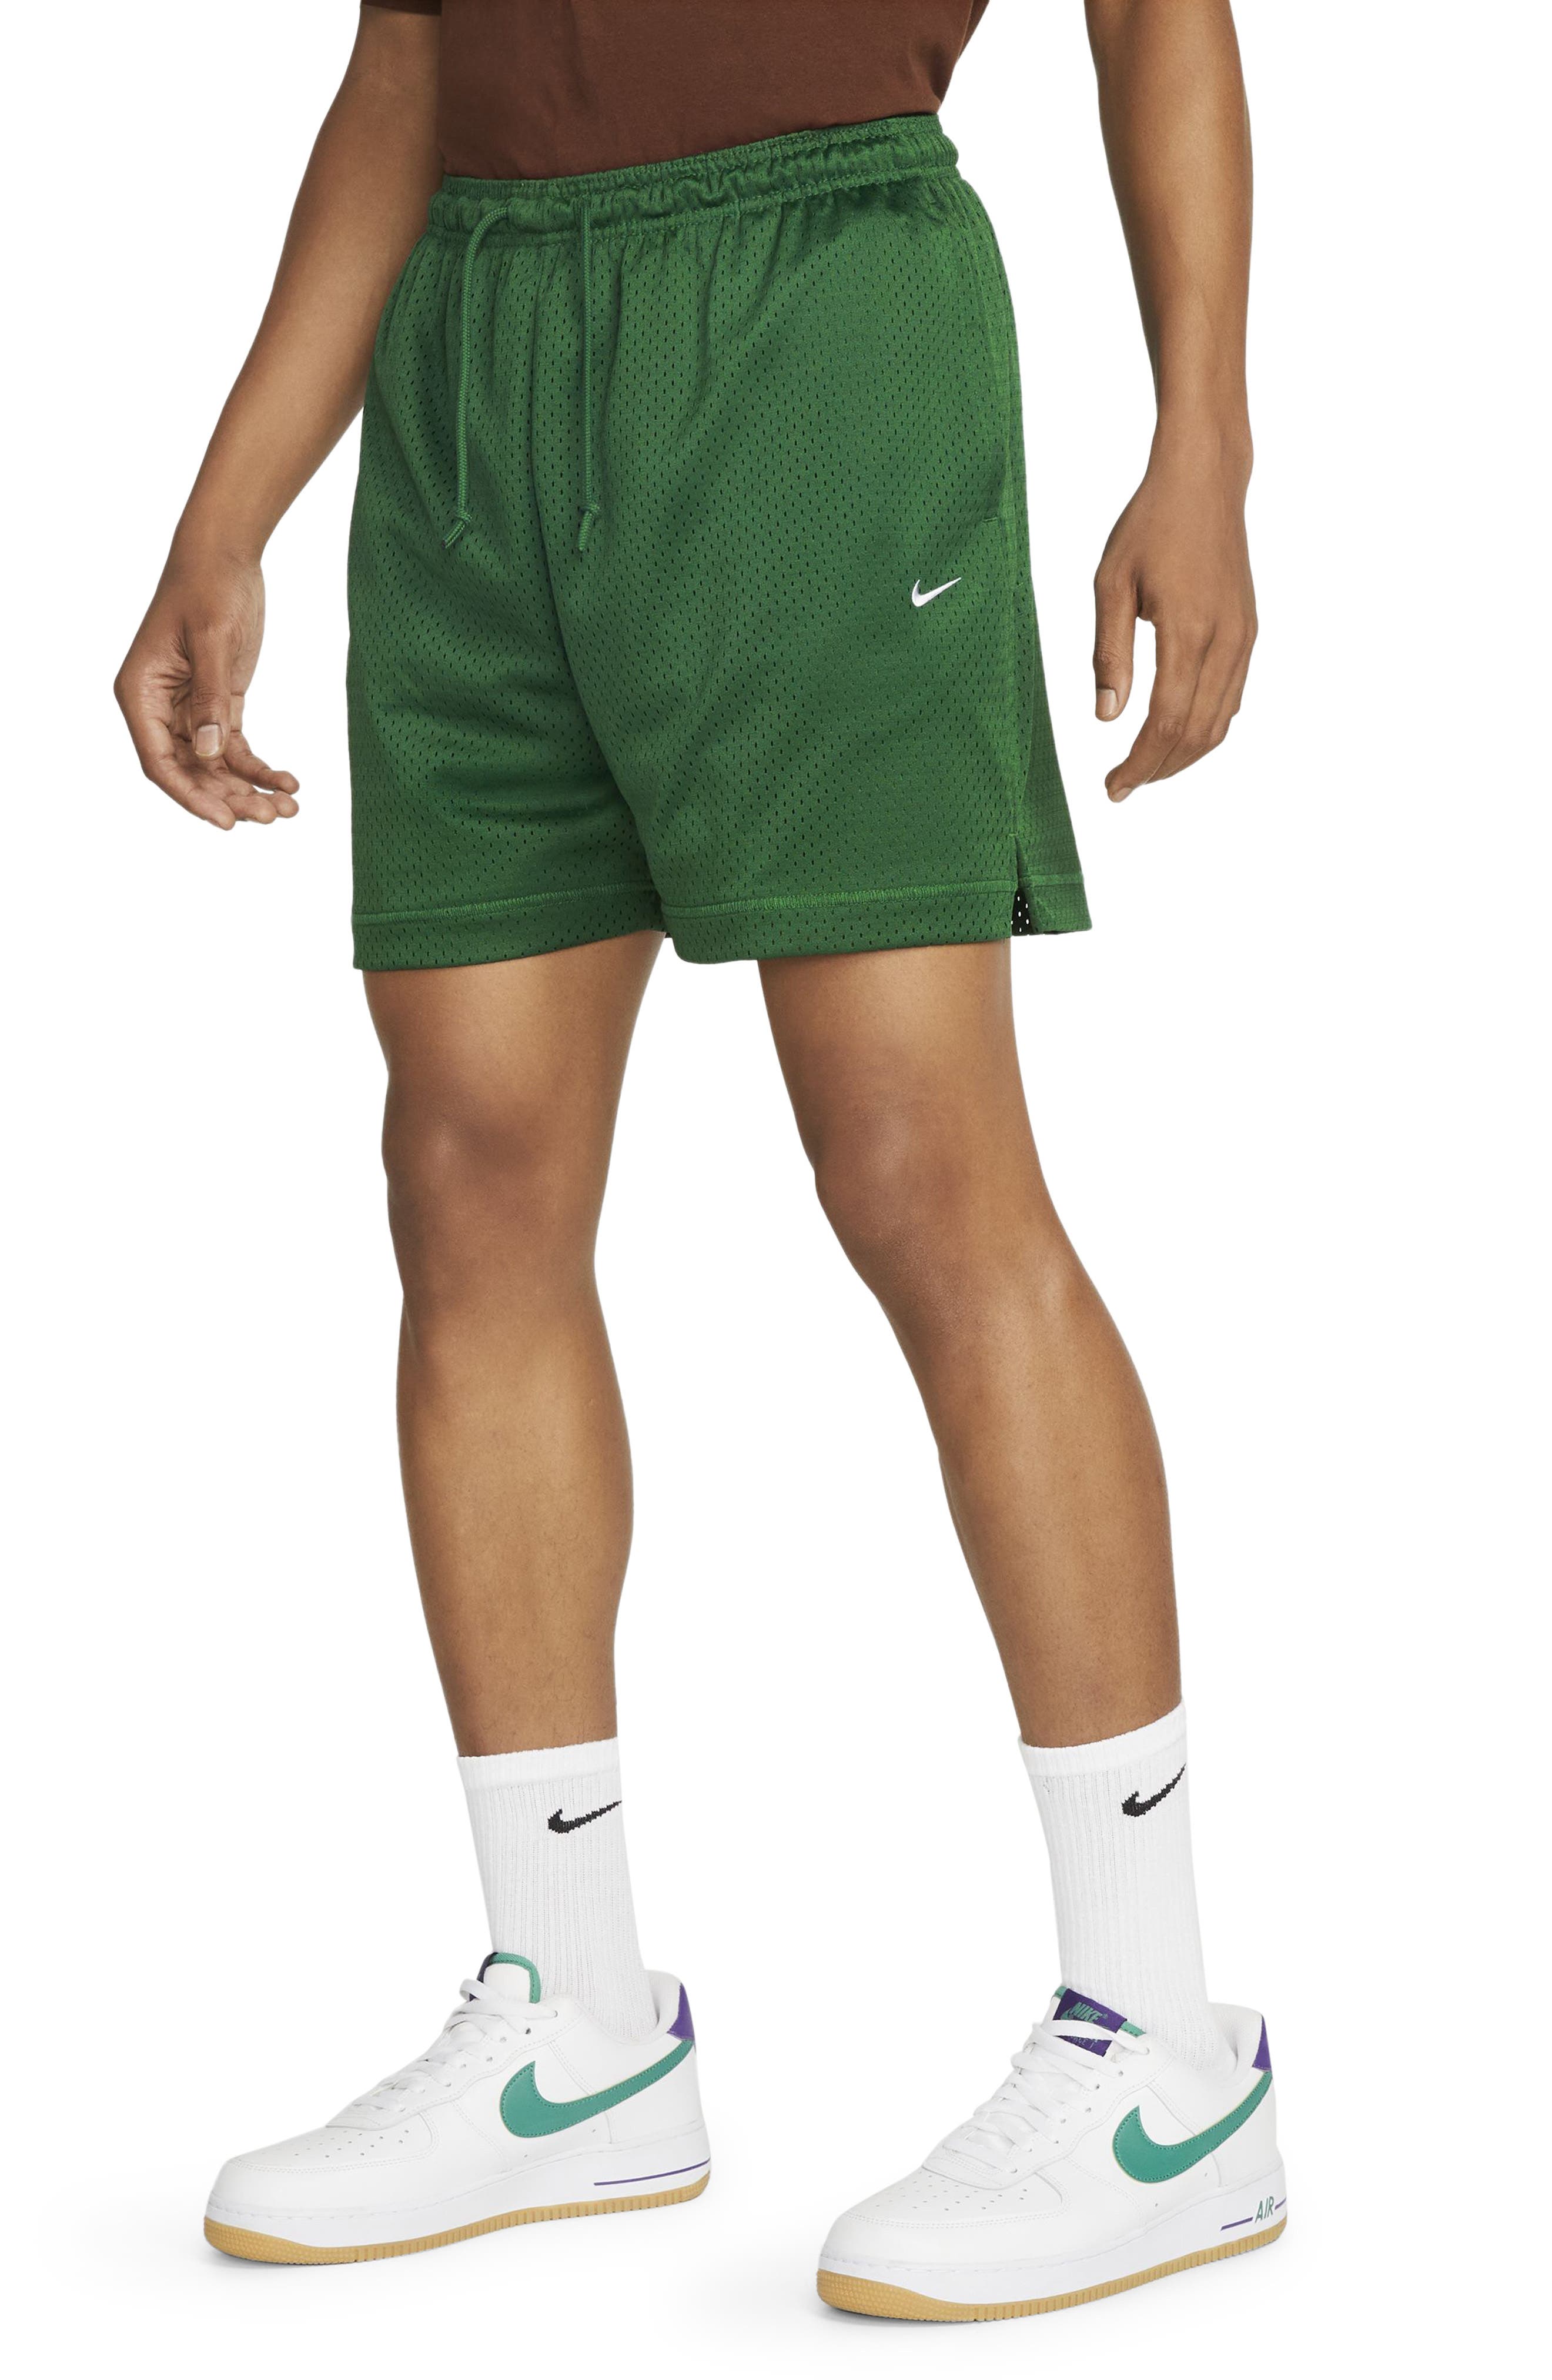 Arizona Wildcats Nike Hype Performance Shorts - Navy